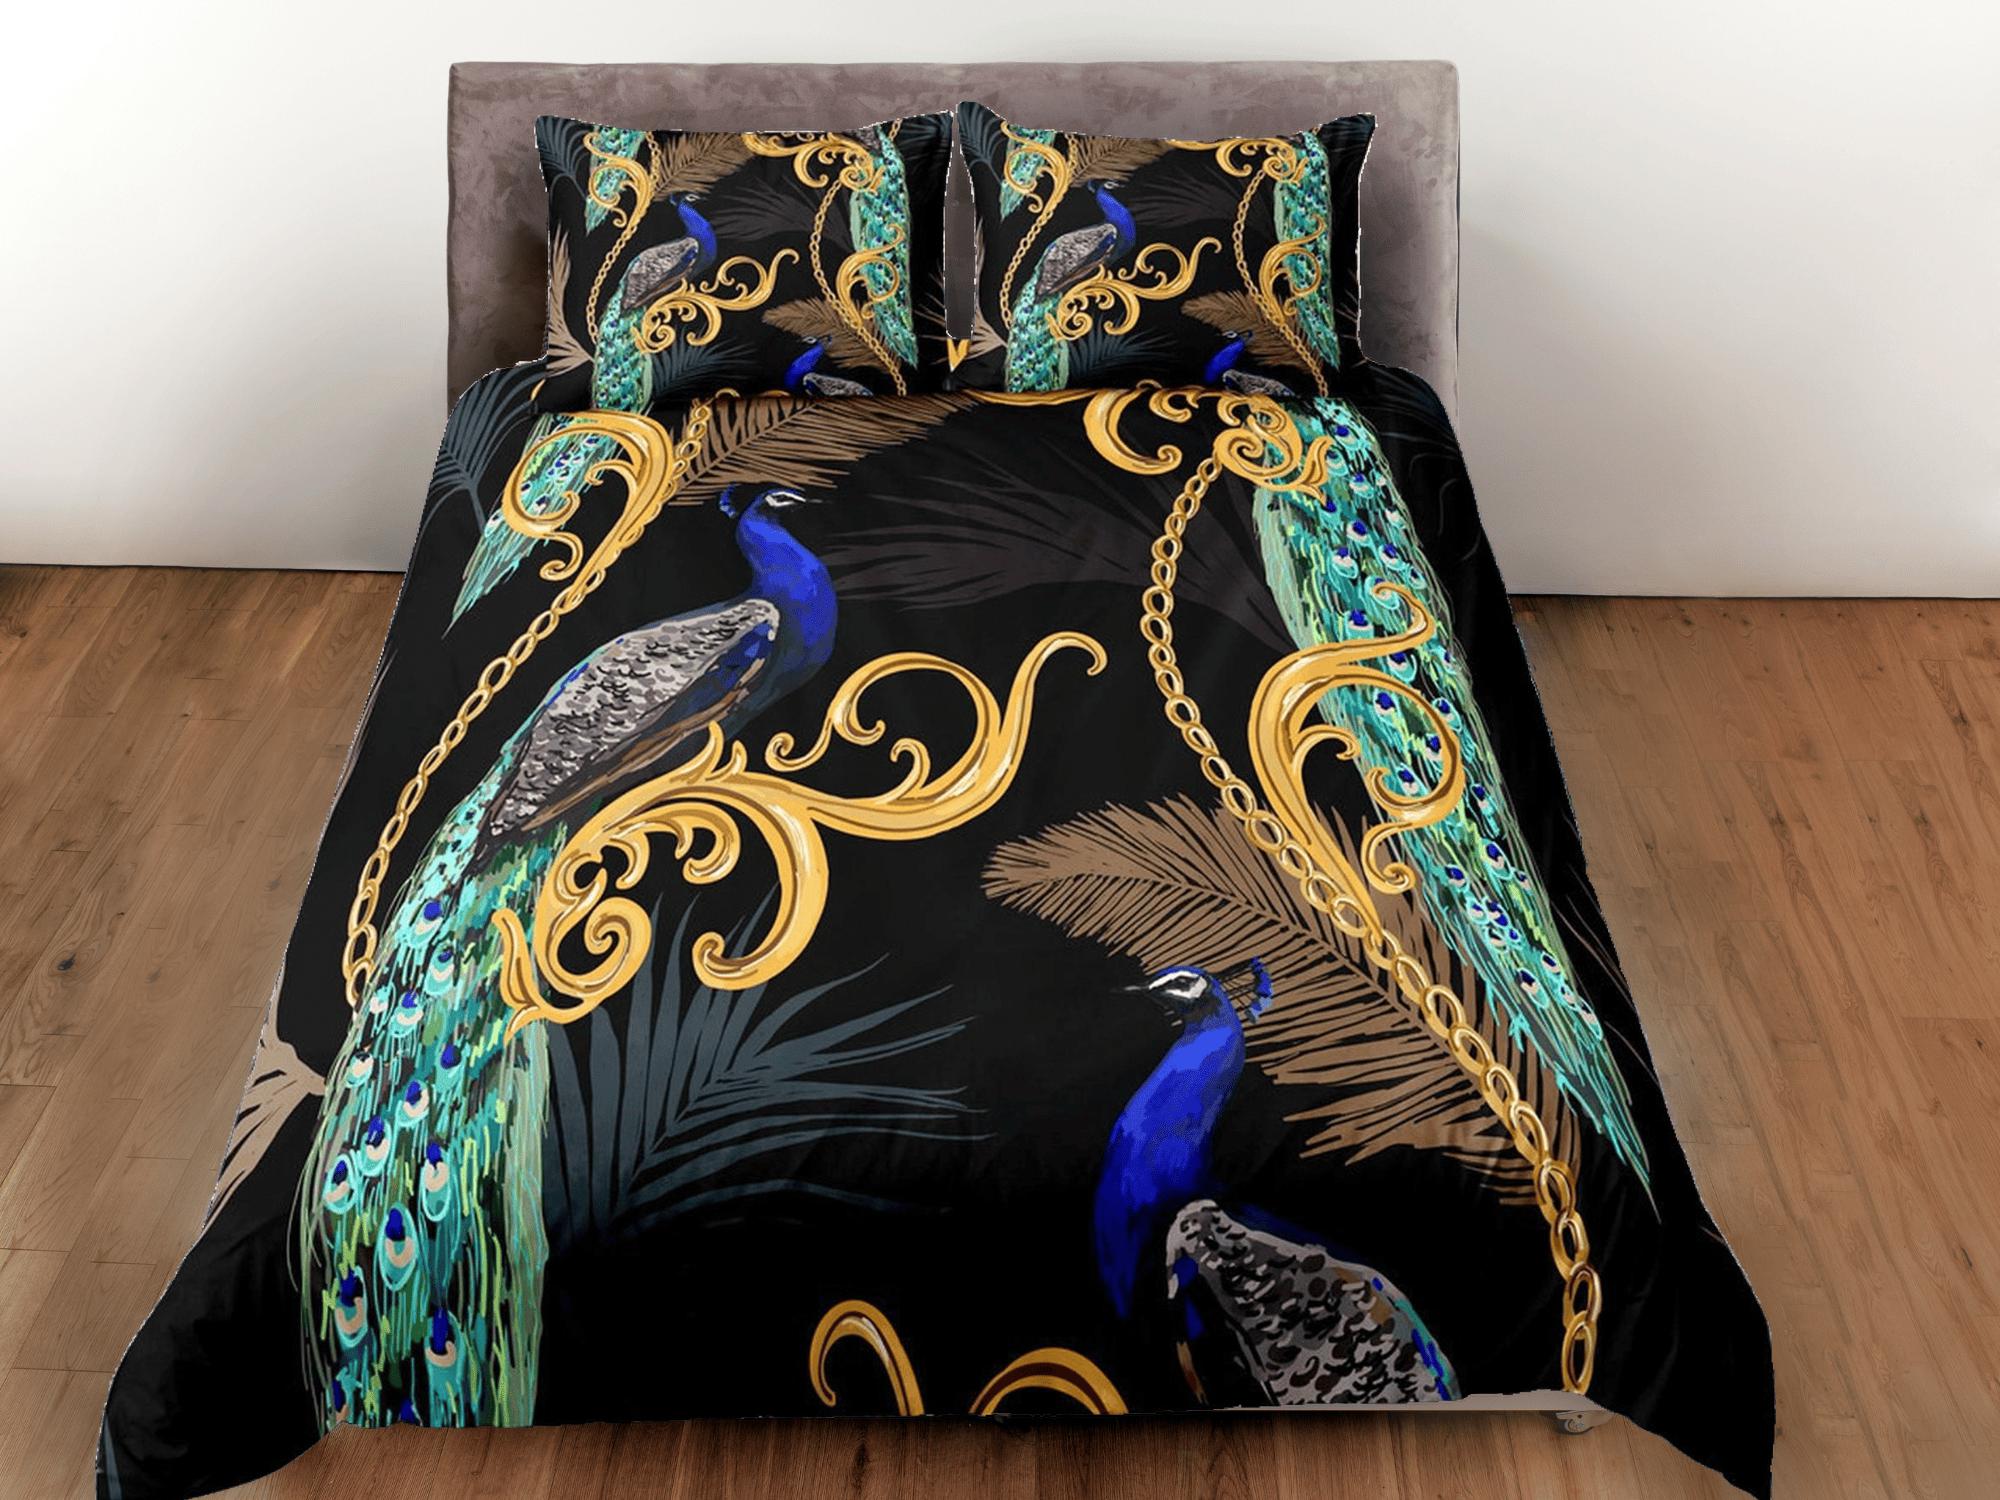 daintyduvet Peacock and gold baroque aesthetic bedding set full, luxury duvet cover queen, king, boho duvet, designer bedding, maximalist decor